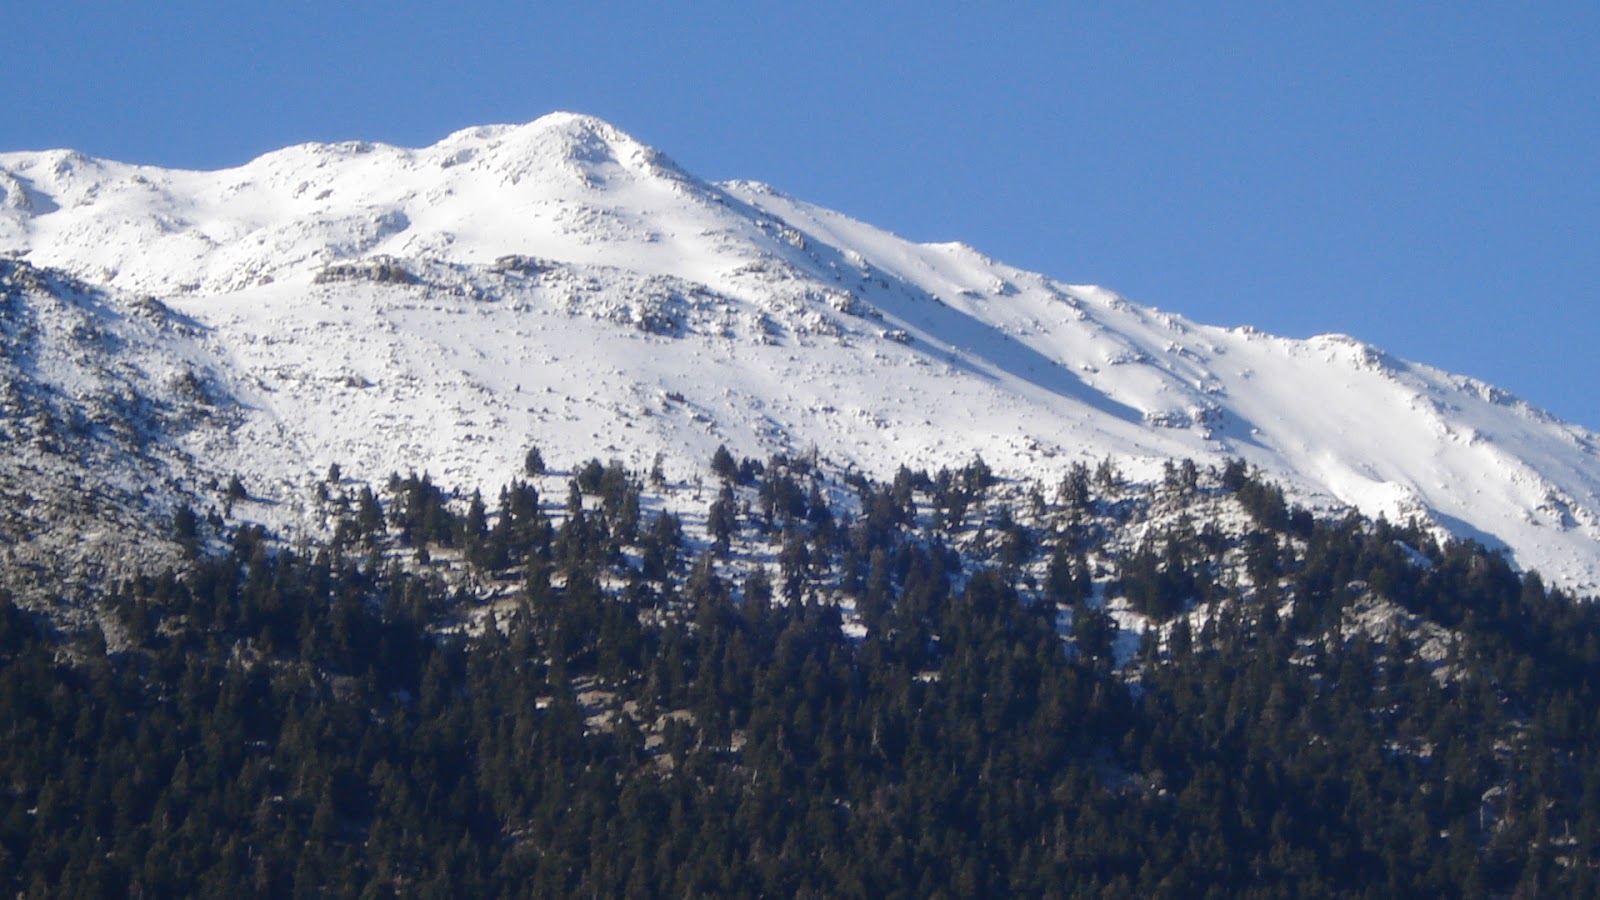 ΕΟΣ Καλαμάτας: Ανάβαση στα Λάμπεια Όρη / κορυφή Ανάληψη (1.789μ.)